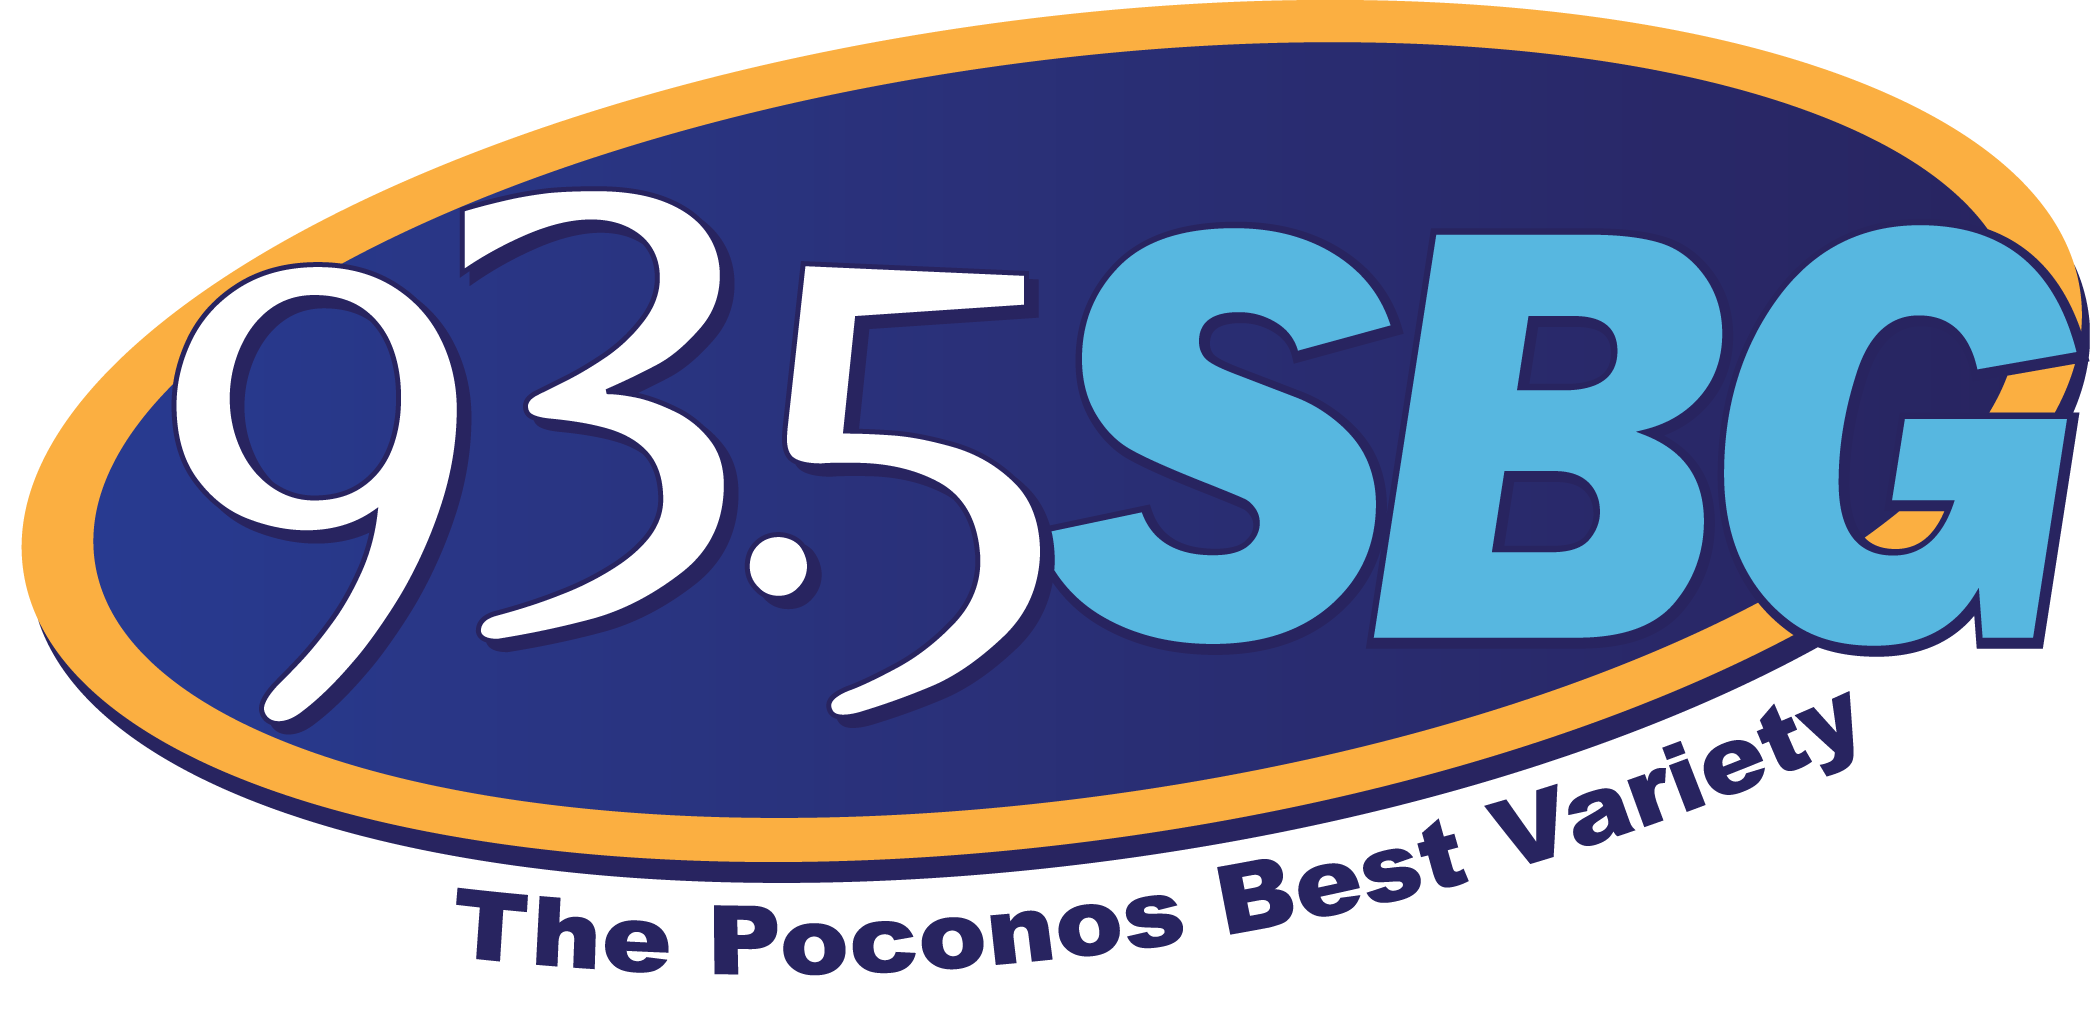 93.5 SBG - Poconos Best Variety